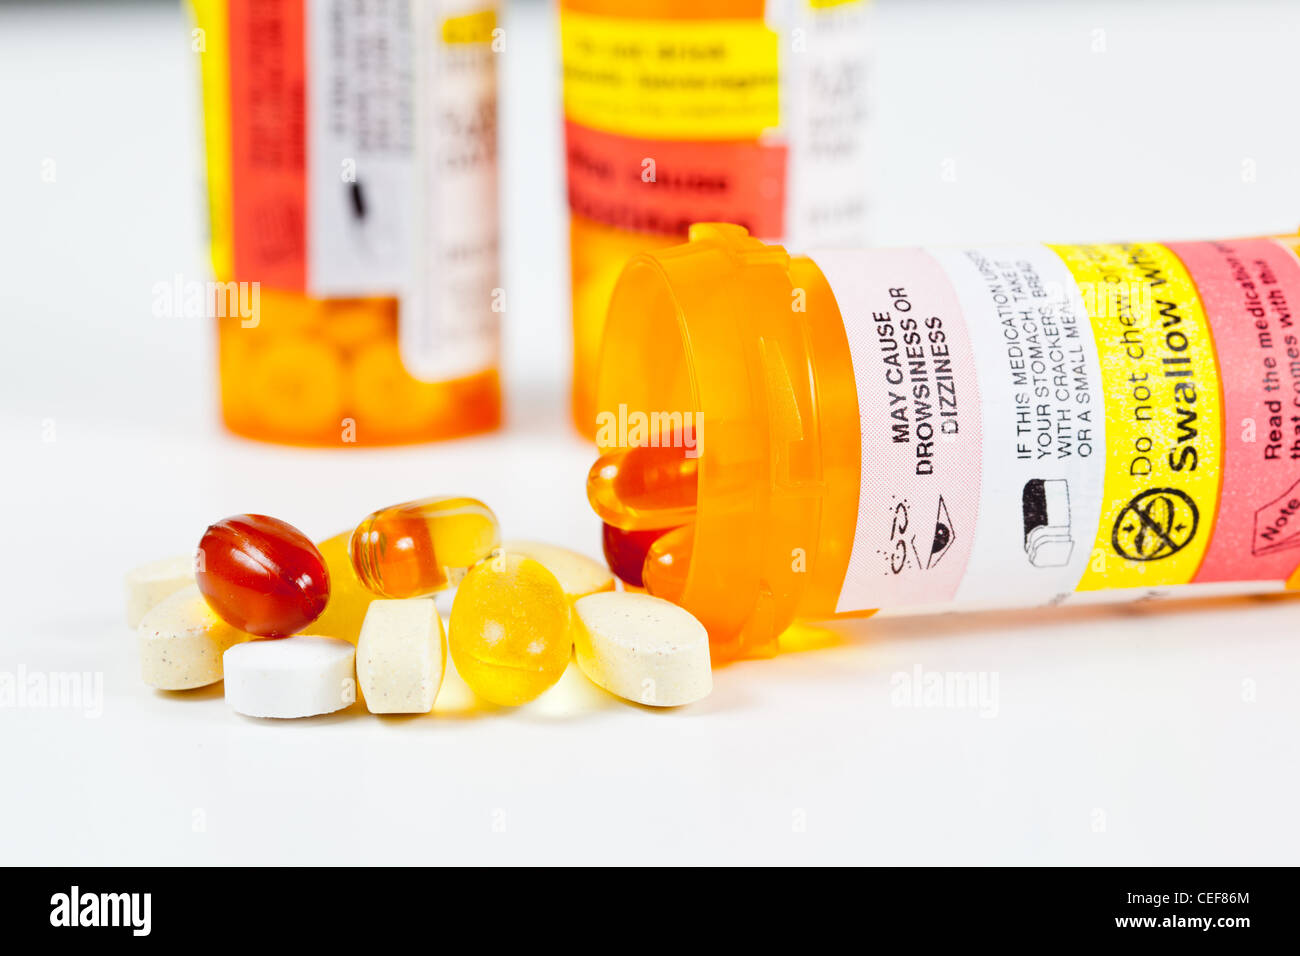 Vitamines colorées de renverser la bouteille de prescription avec des avertissements Banque D'Images